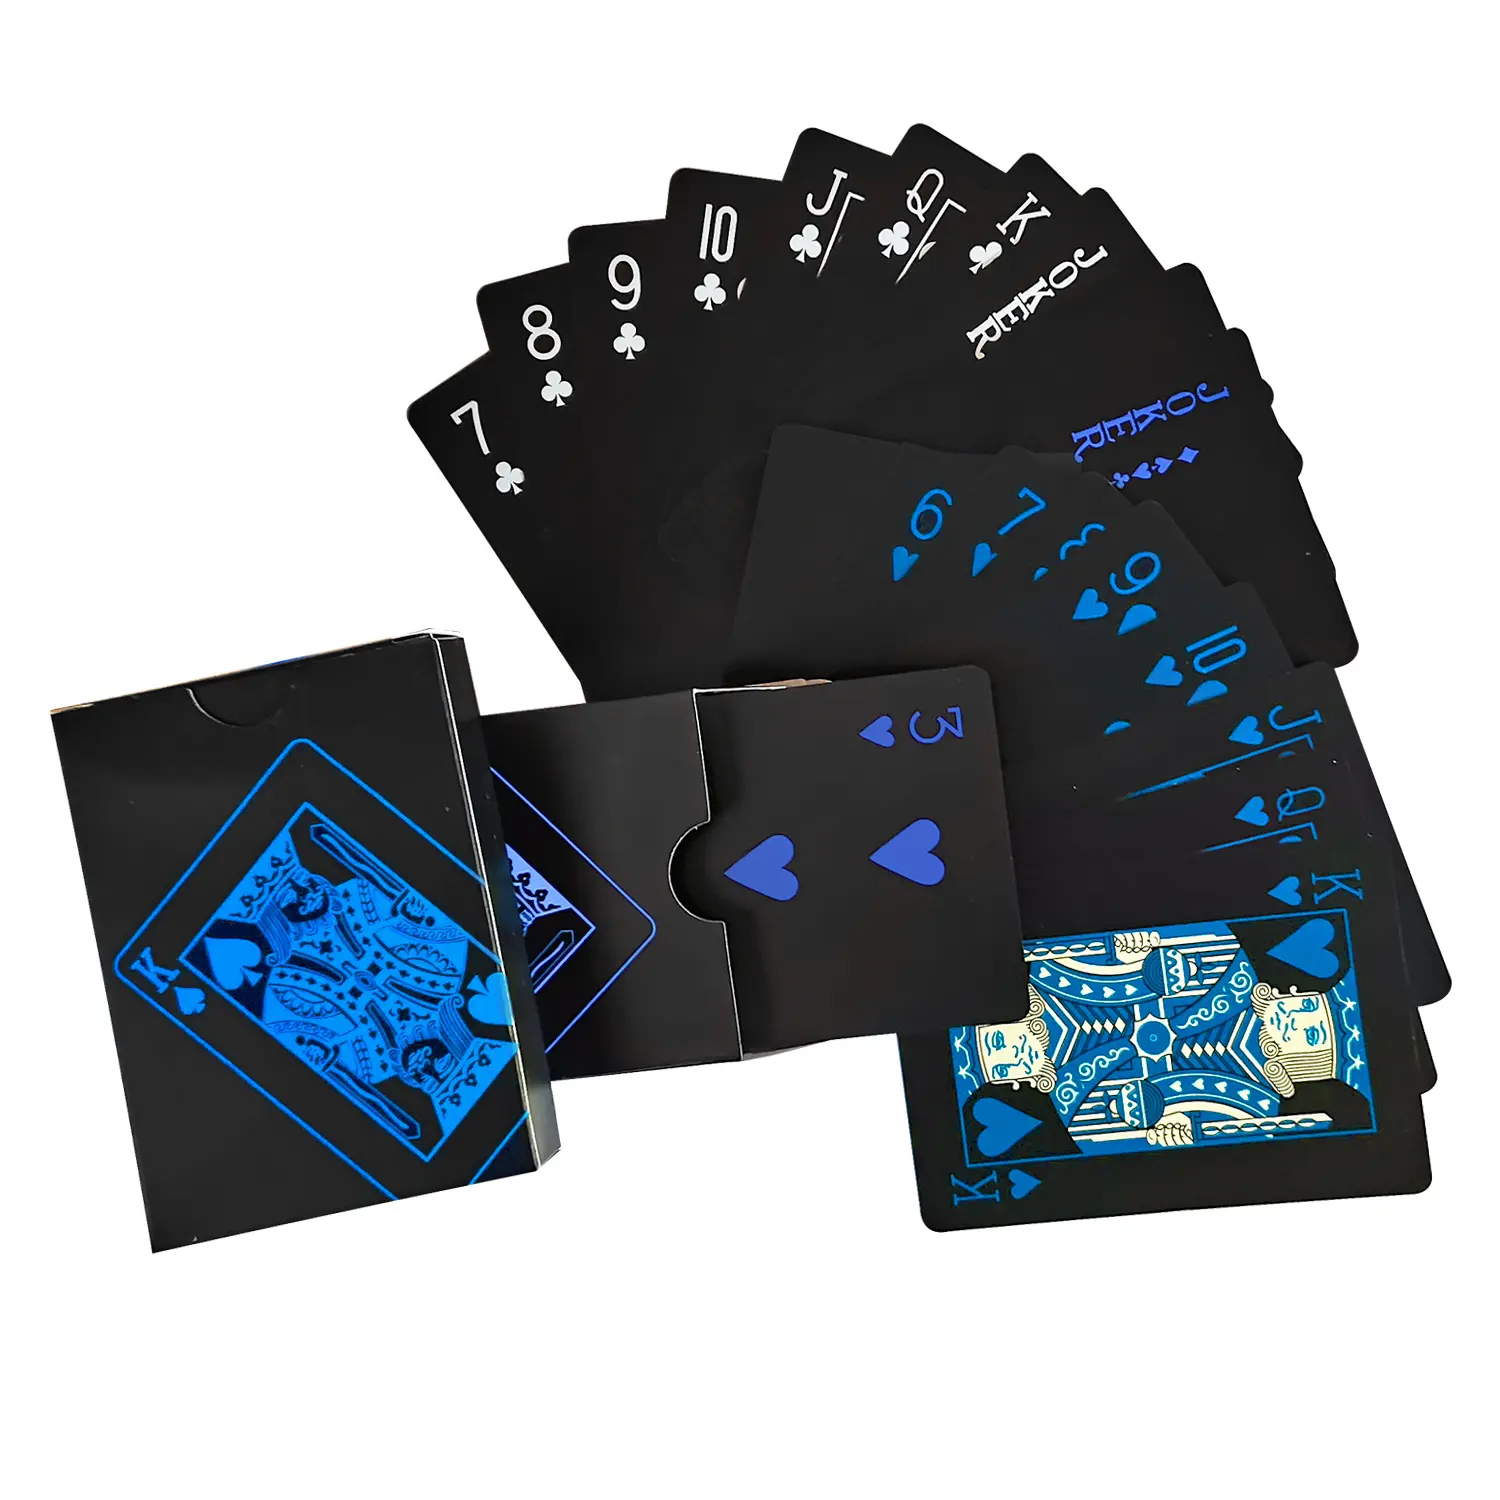 Commercio all'ingrosso della fabbrica stampa impermeabile di plastica gioco di carte da tavolo nero gioco Poker carta da gioco